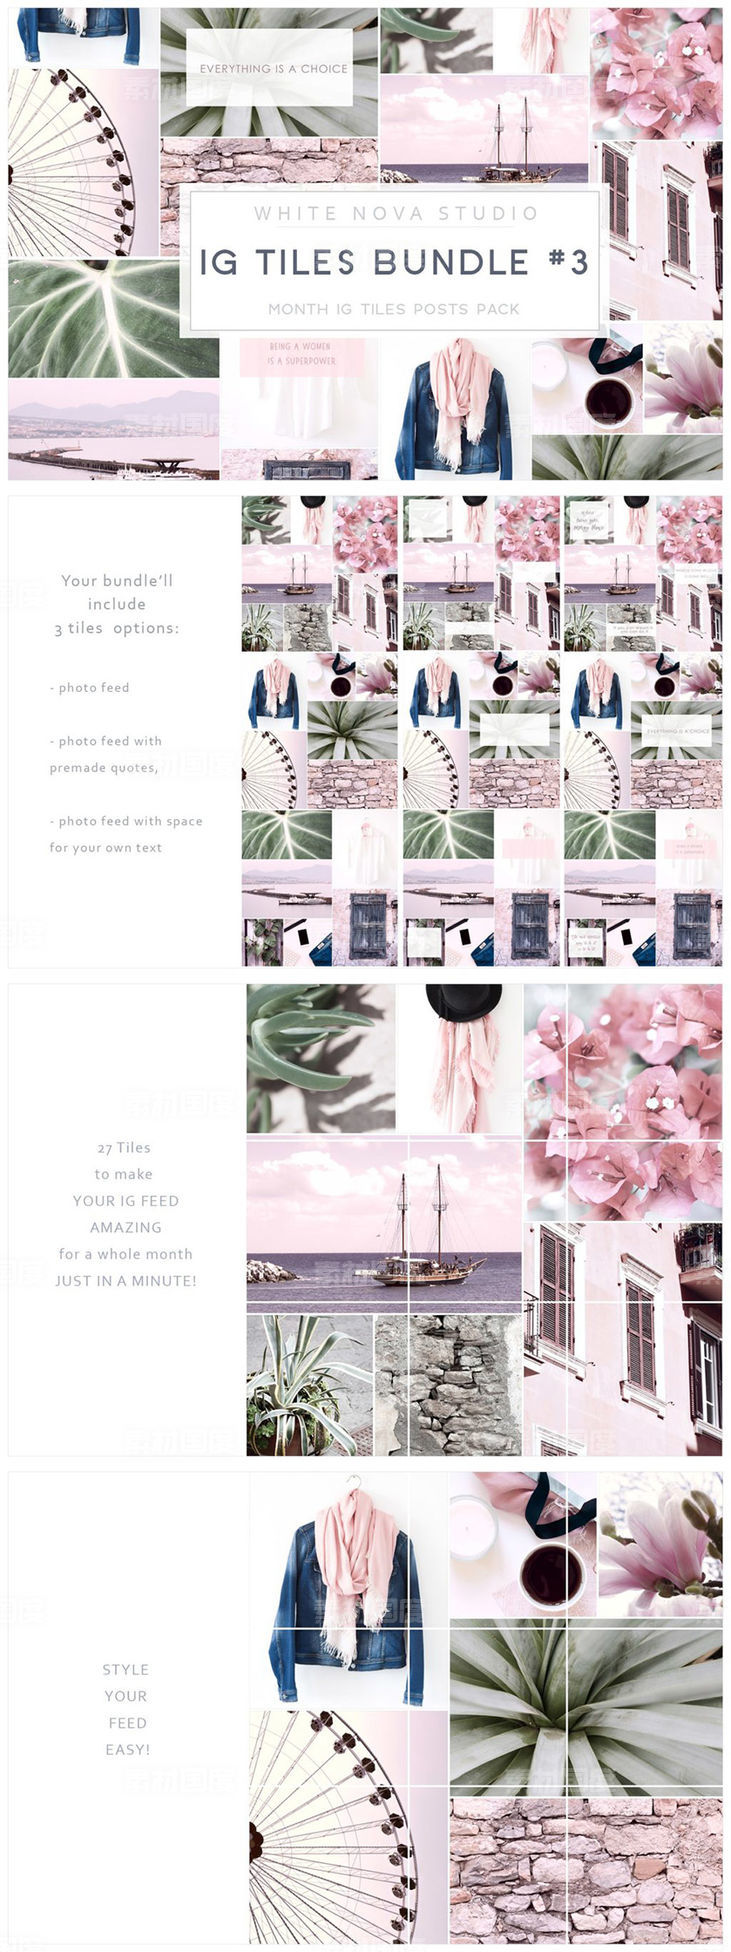 [JPG]Instagram标题贴图设计素材包 Instagram Tiles Bundle 